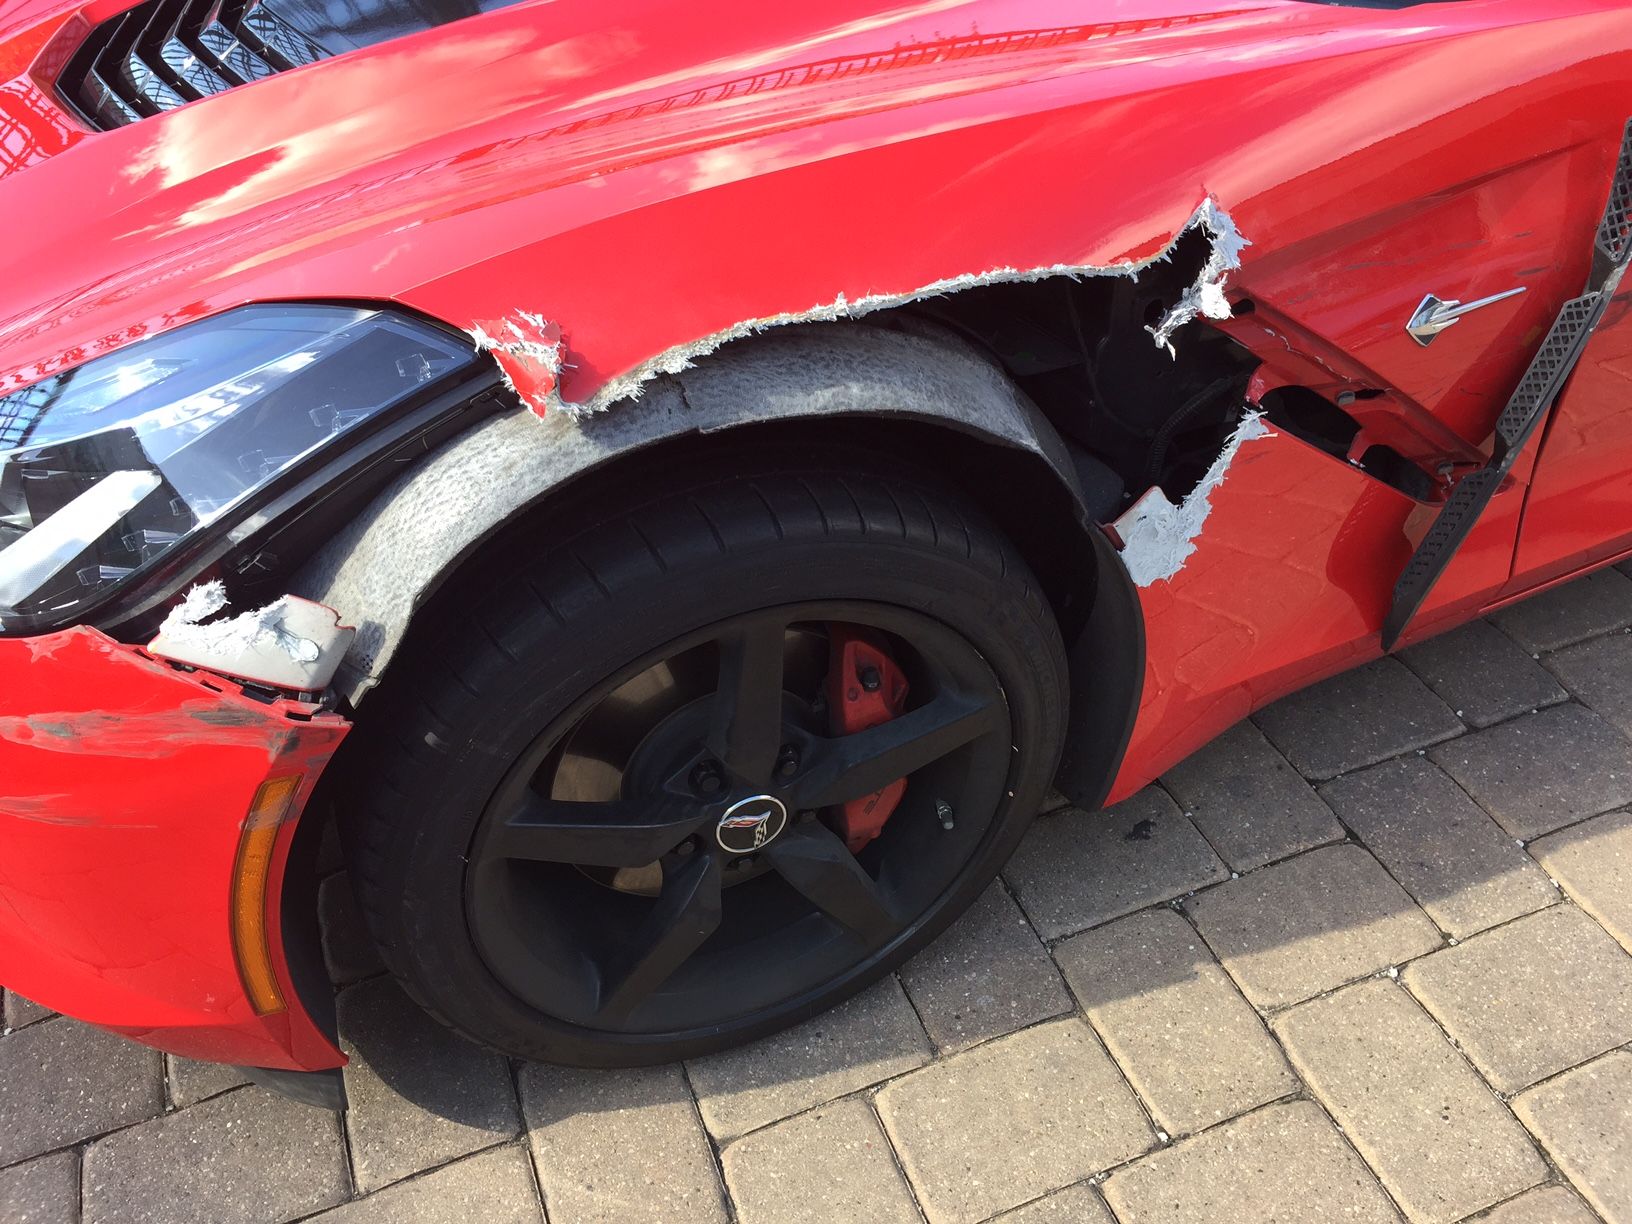 Would You Own a Crash-Damaged Corvette?